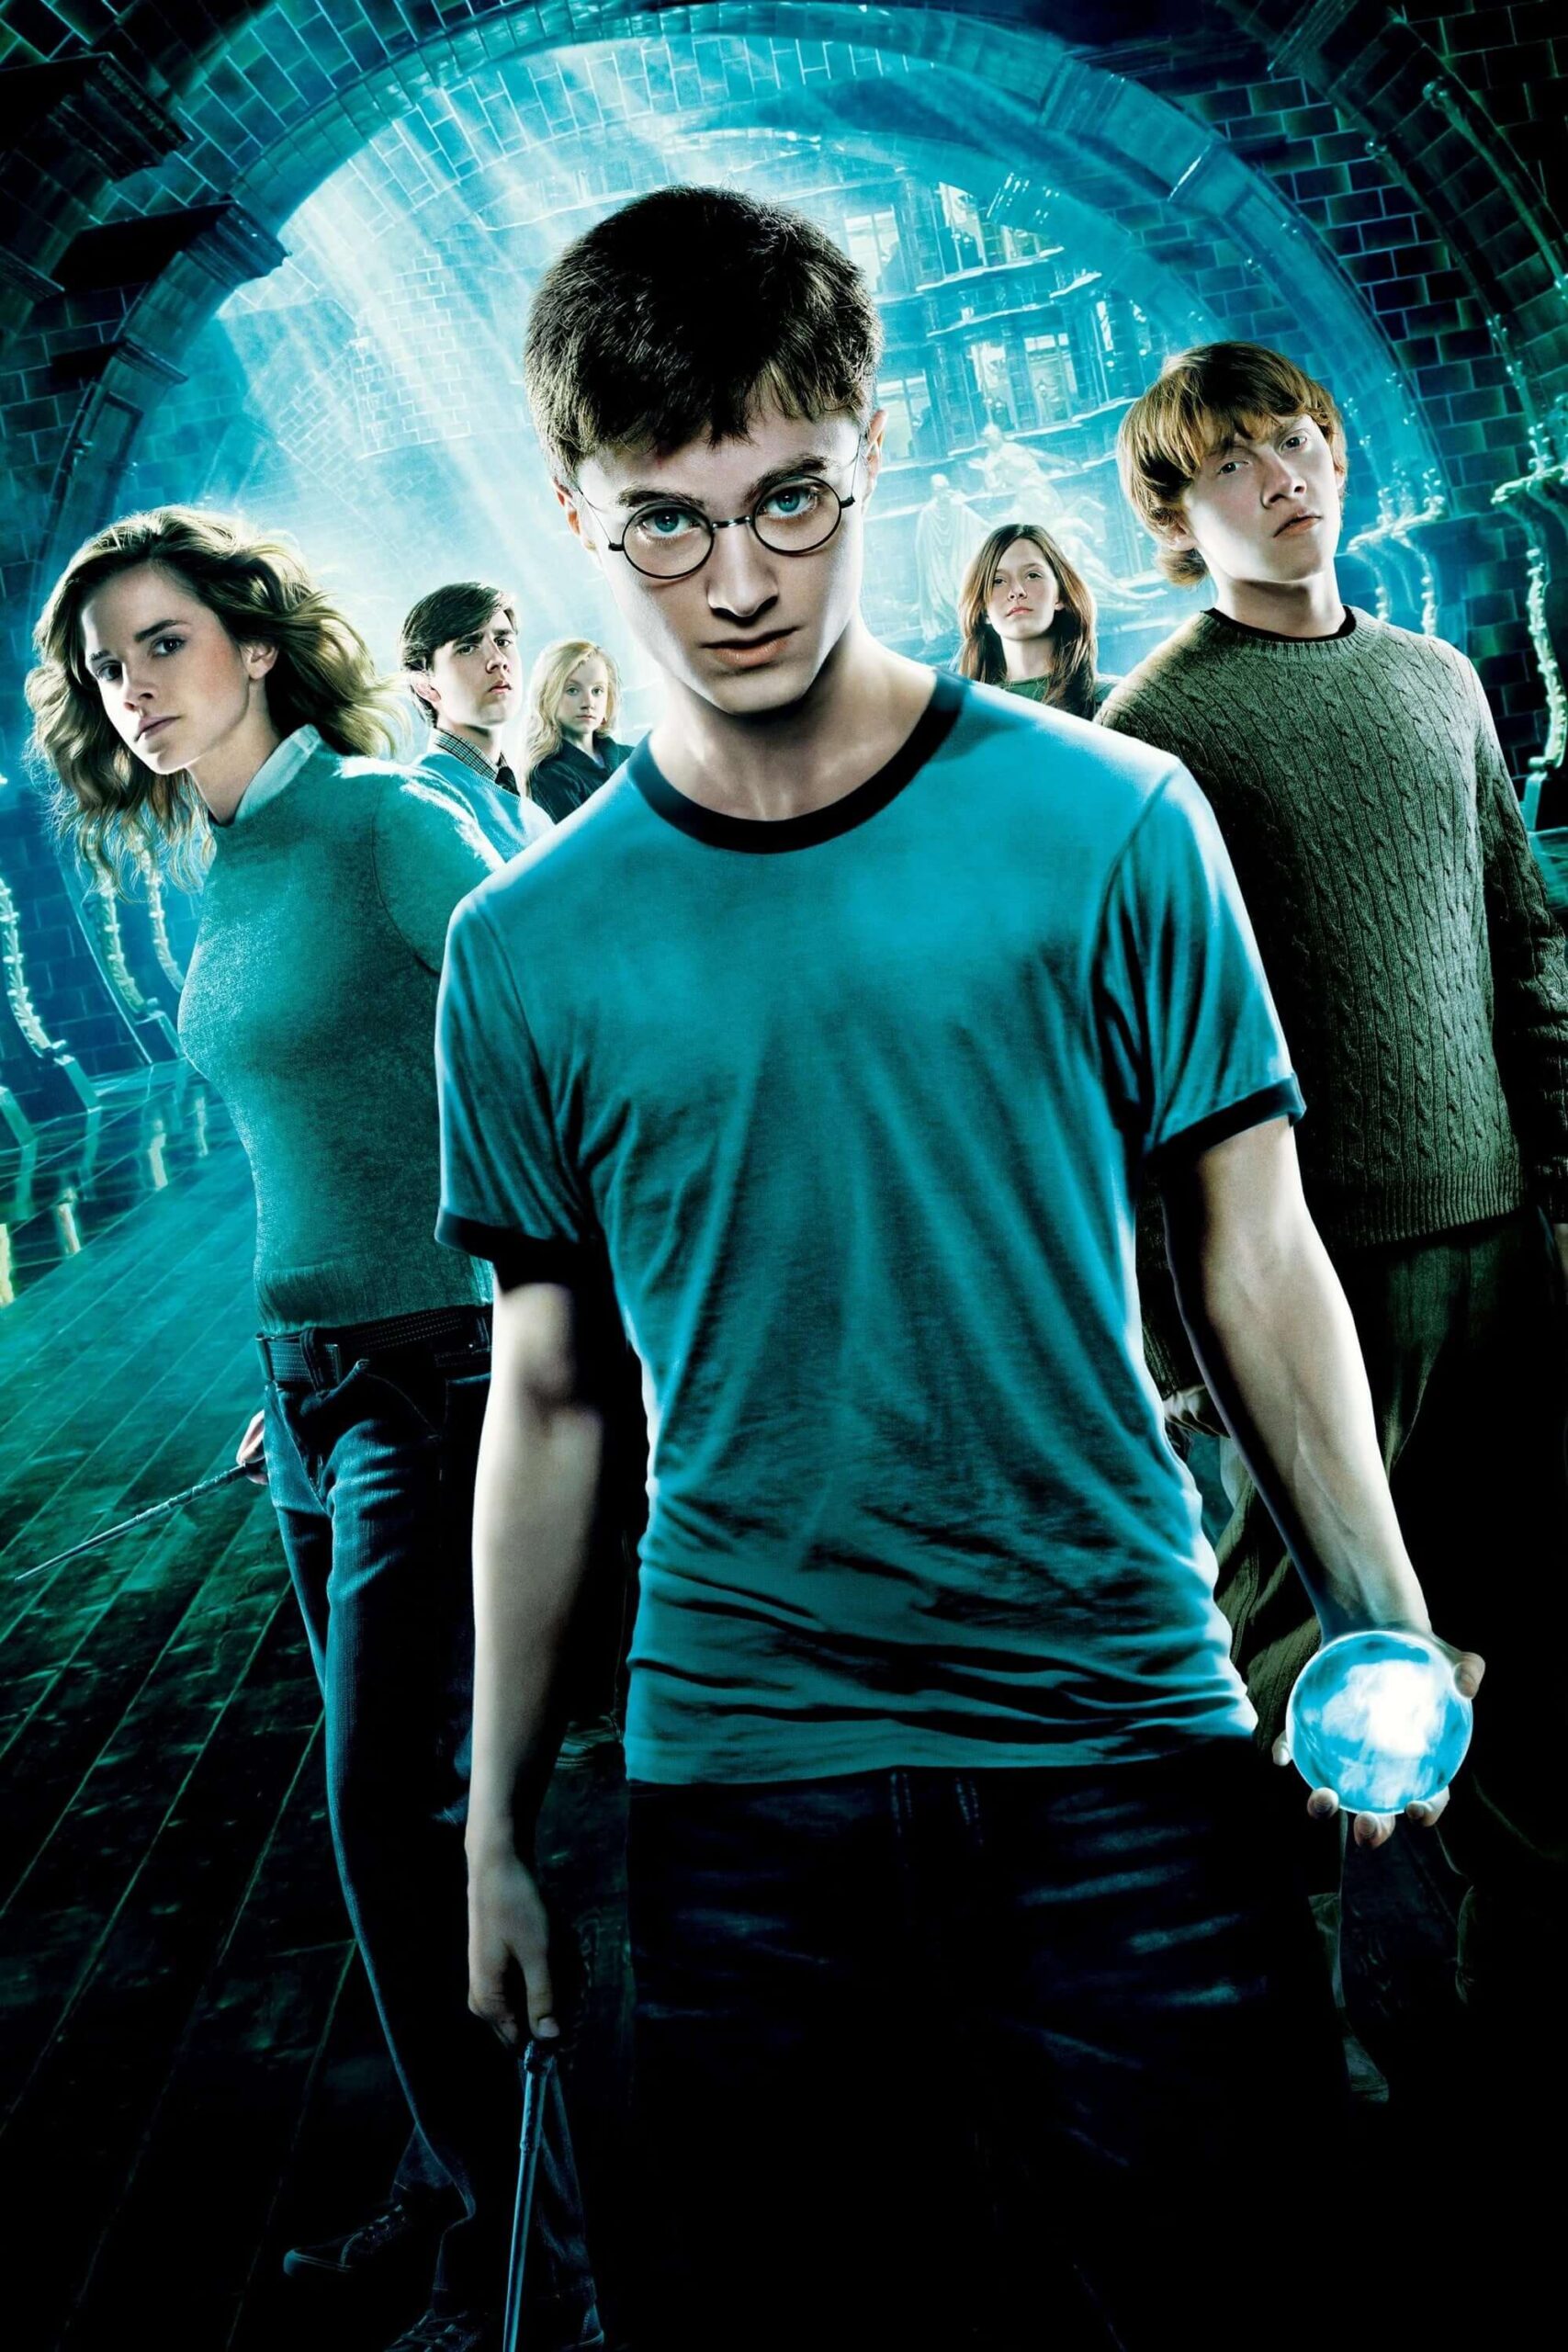 هری پاتر و محفل ققنوس (Harry Potter and the Order of the Phoenix)